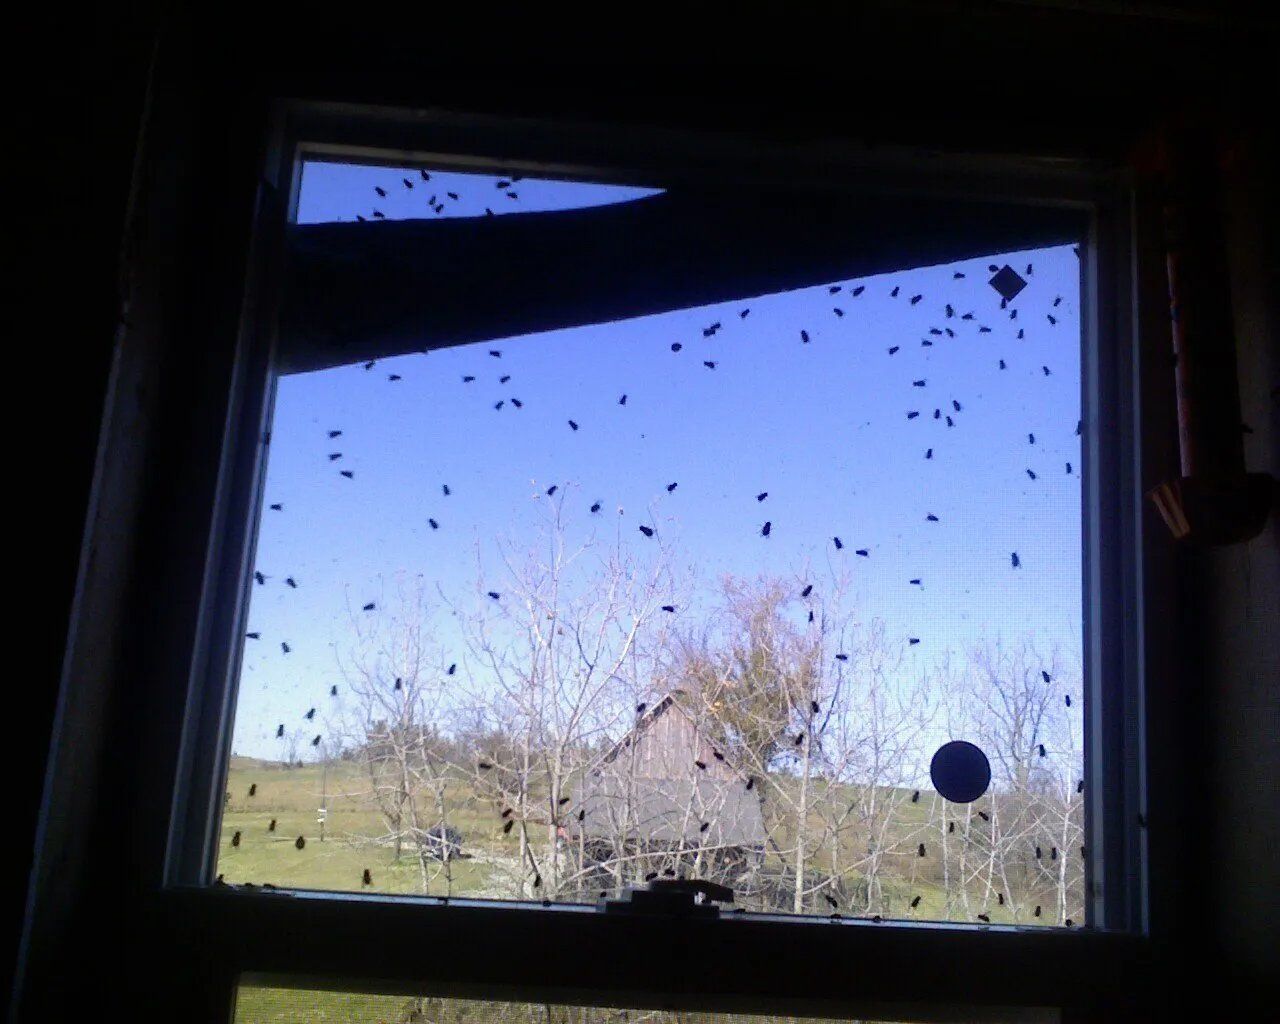 Window Full of Flies